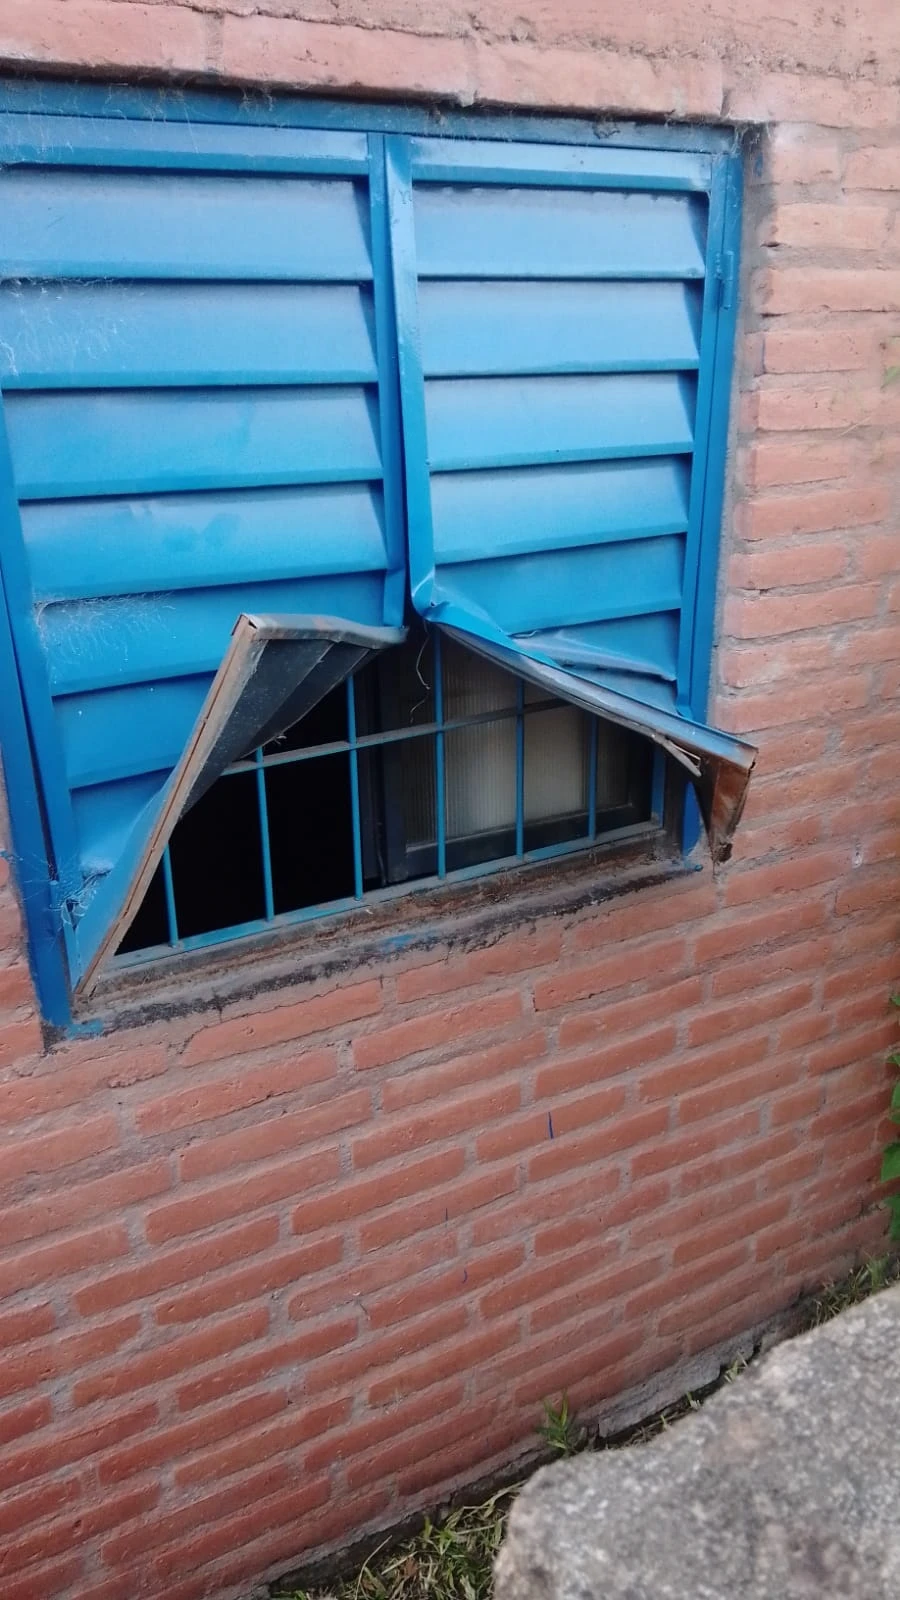 DAÑOS. Una de las ventanas que rompieron los ladrones, la reja interior evitó que pasaran a la casa.